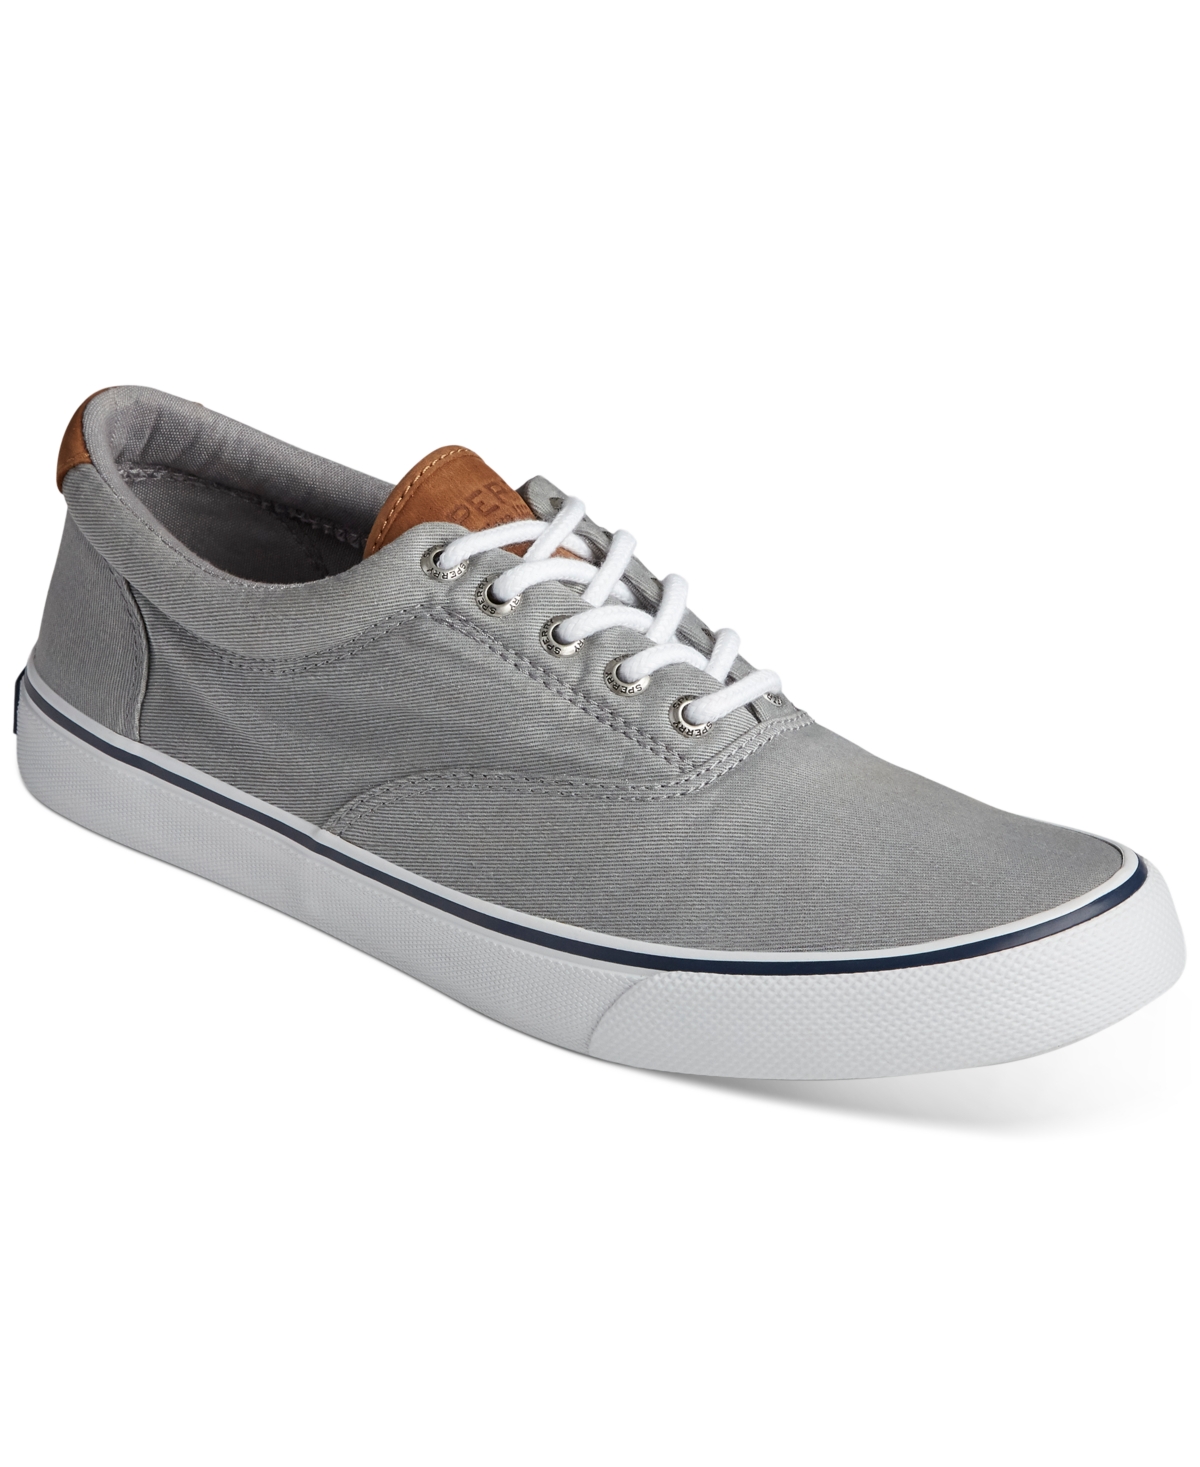 Men's Striper Ii Cvo Core Canvas Sneakers - Gray